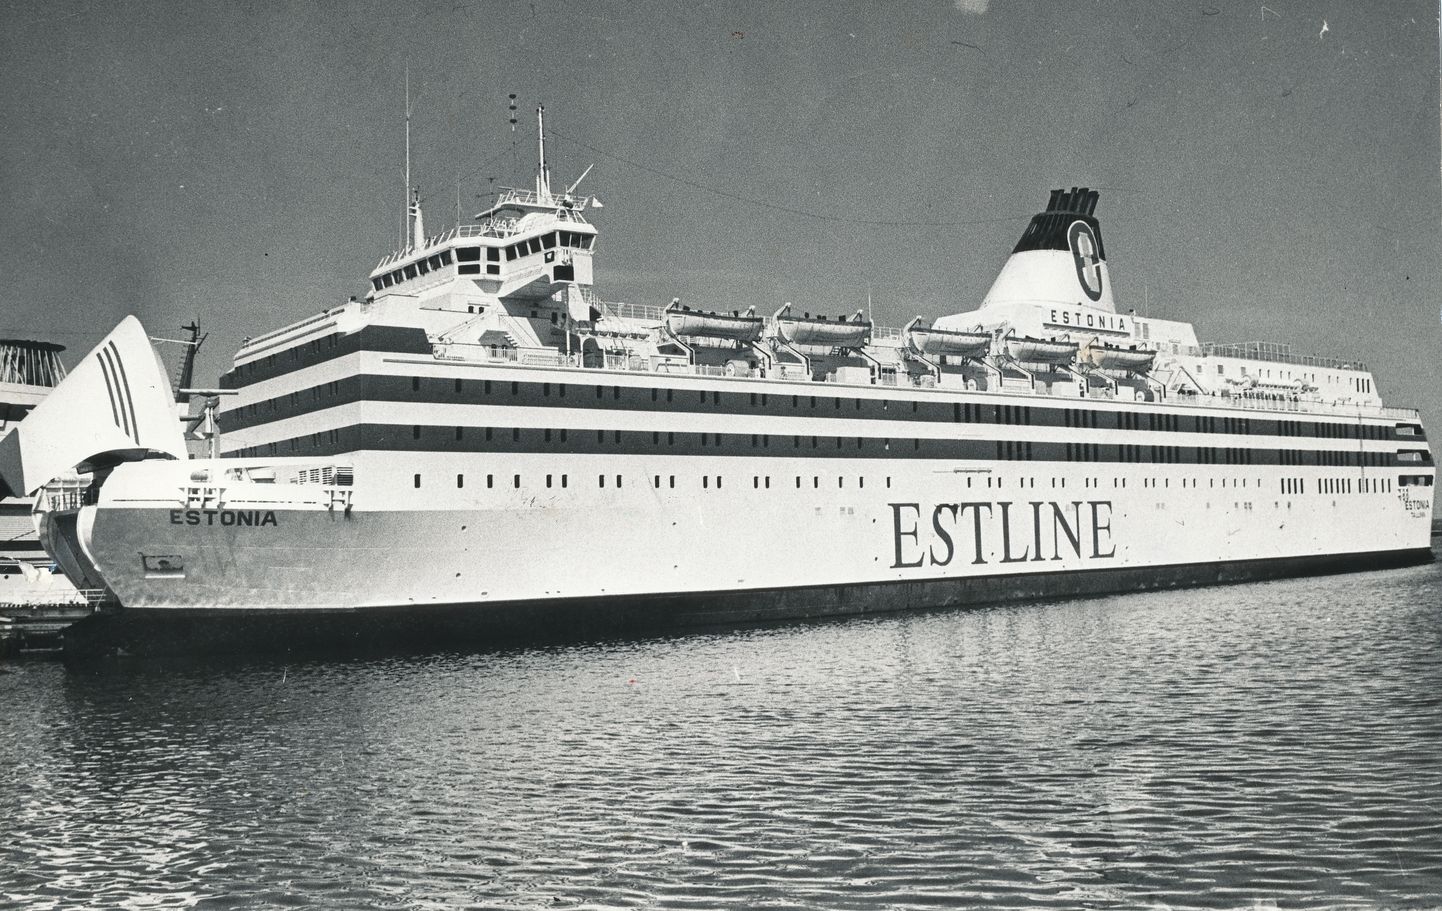 Паром "Эстония" в порту.